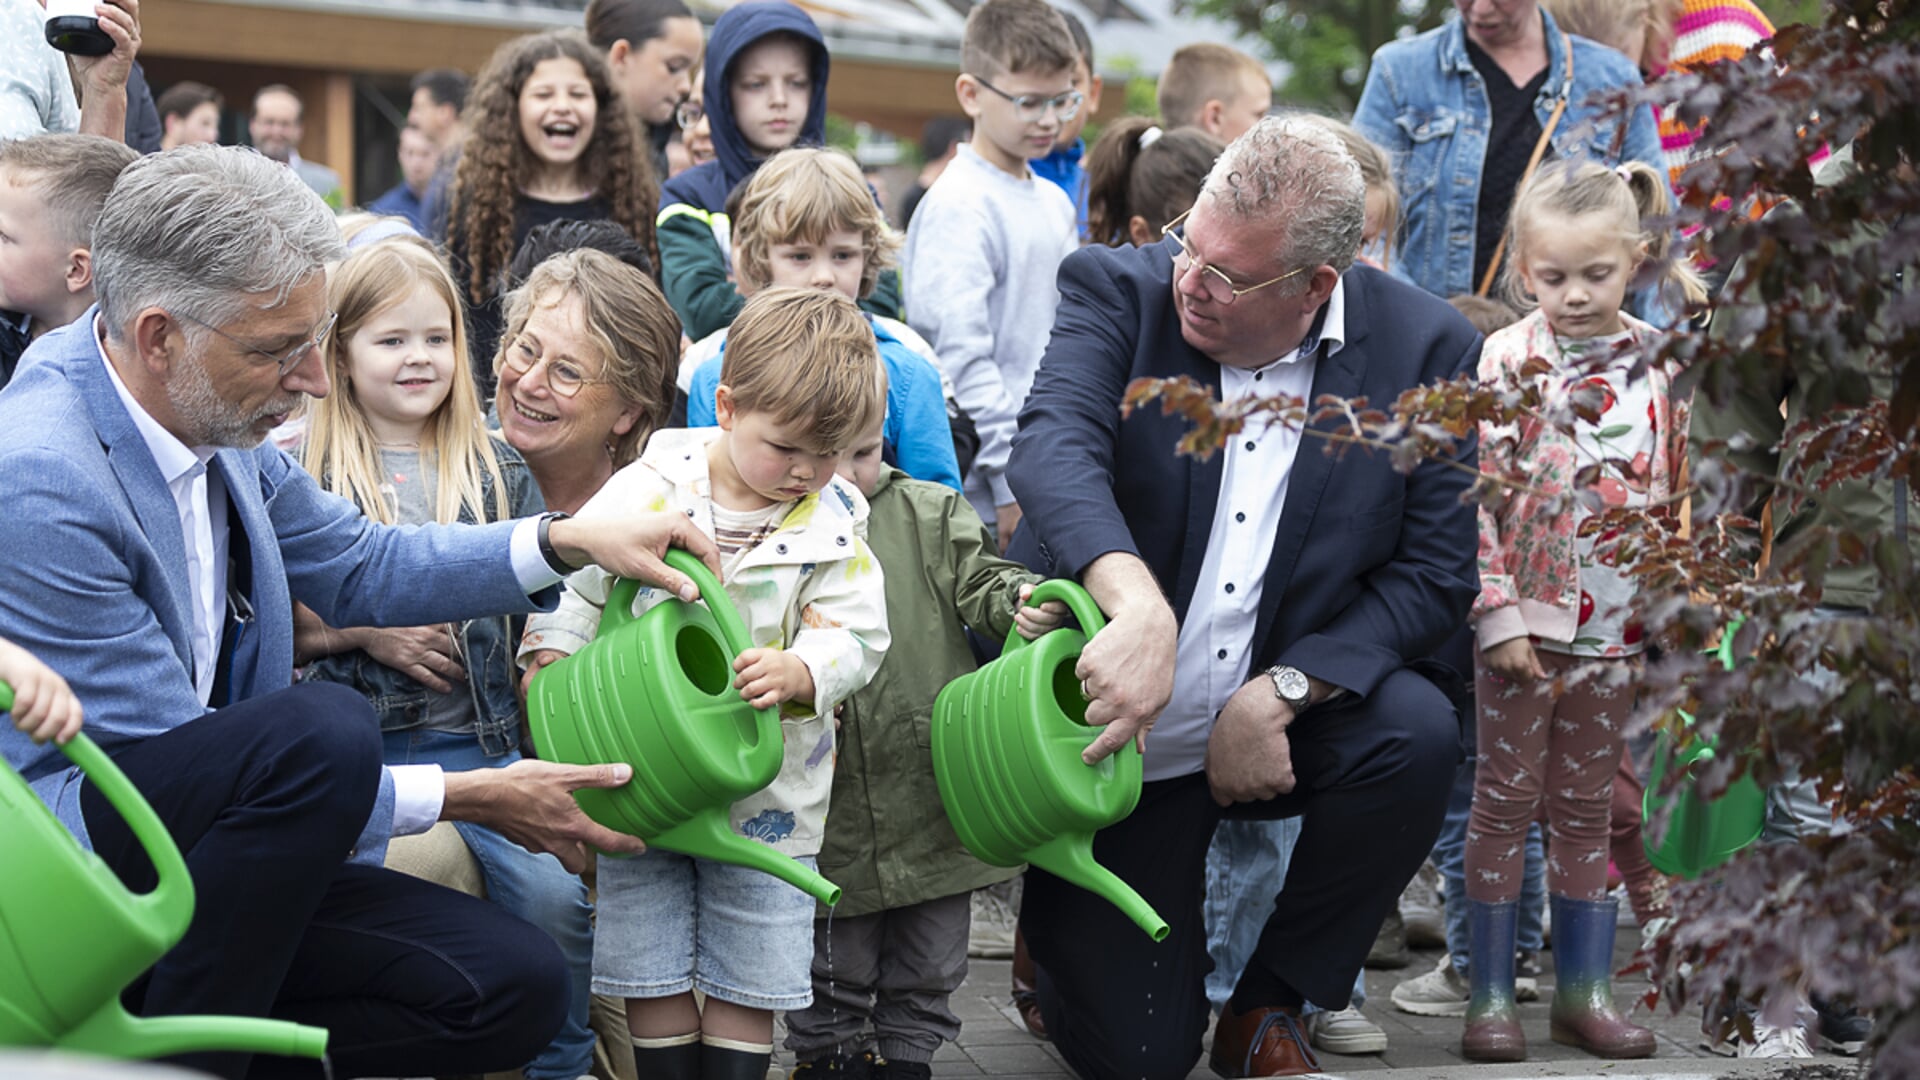 Voorzitter College van bestuur Verdi Paul Meessen en wethouder Johan van Gerwen geven samen met de kinderen water aan de boom die symbool staat voor De Wijzelaar.